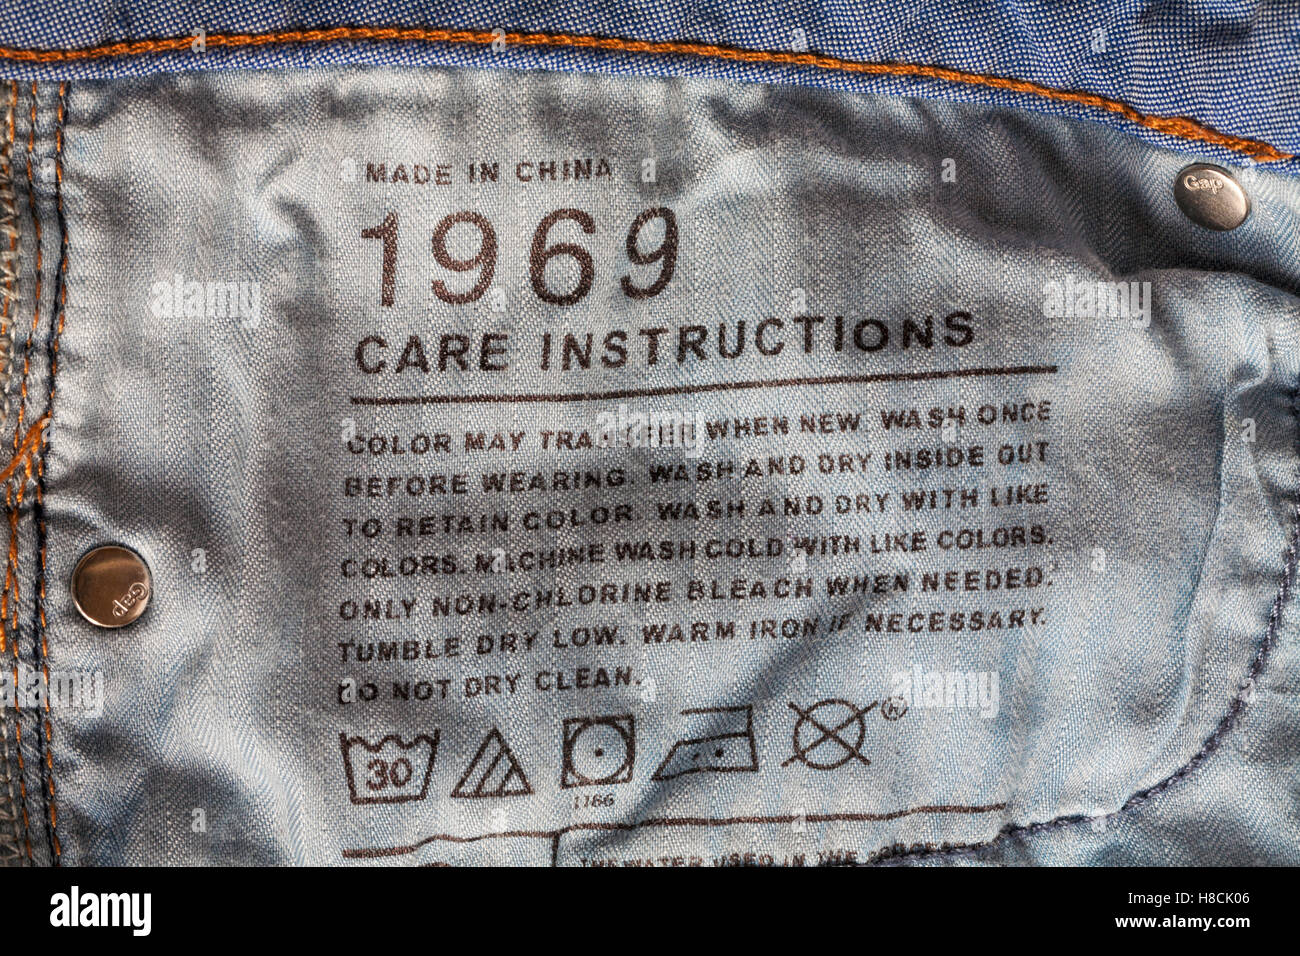 Instructions relatives aux soins d'un cachet dans GAP 1969 denim jeans fabriqués en Chine Banque D'Images